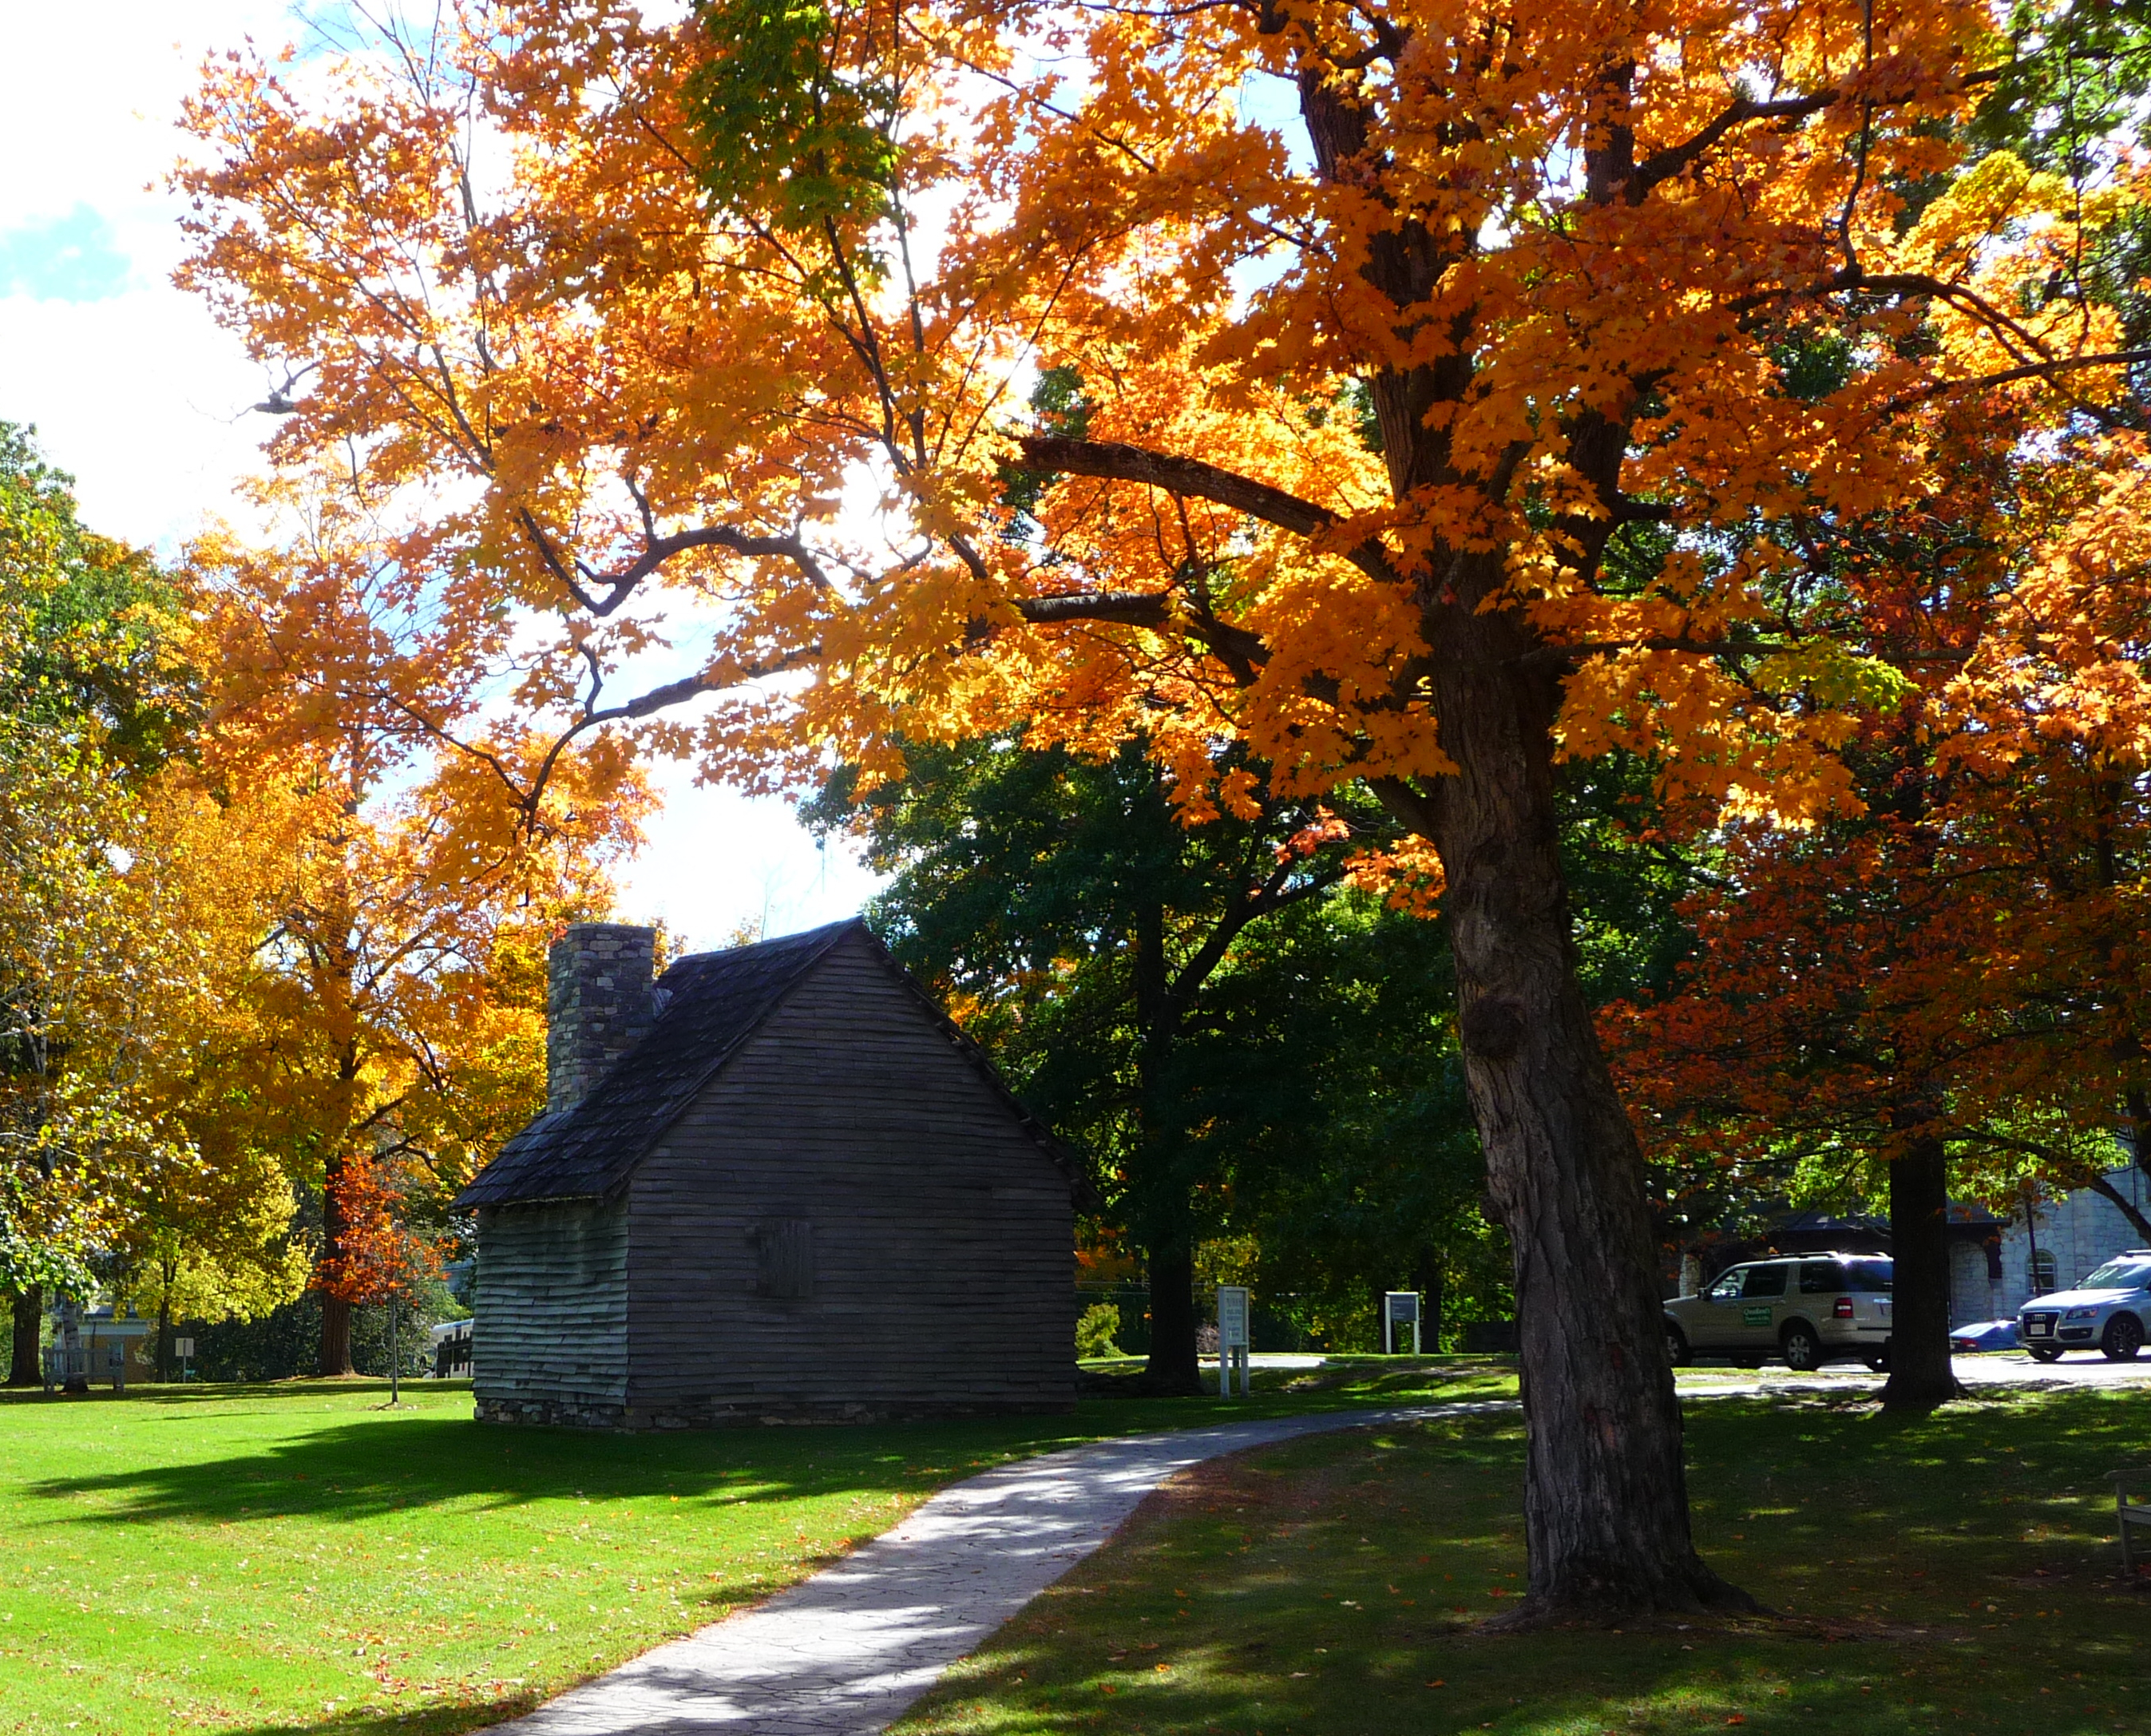 Fall foliage in Williamstown, MA